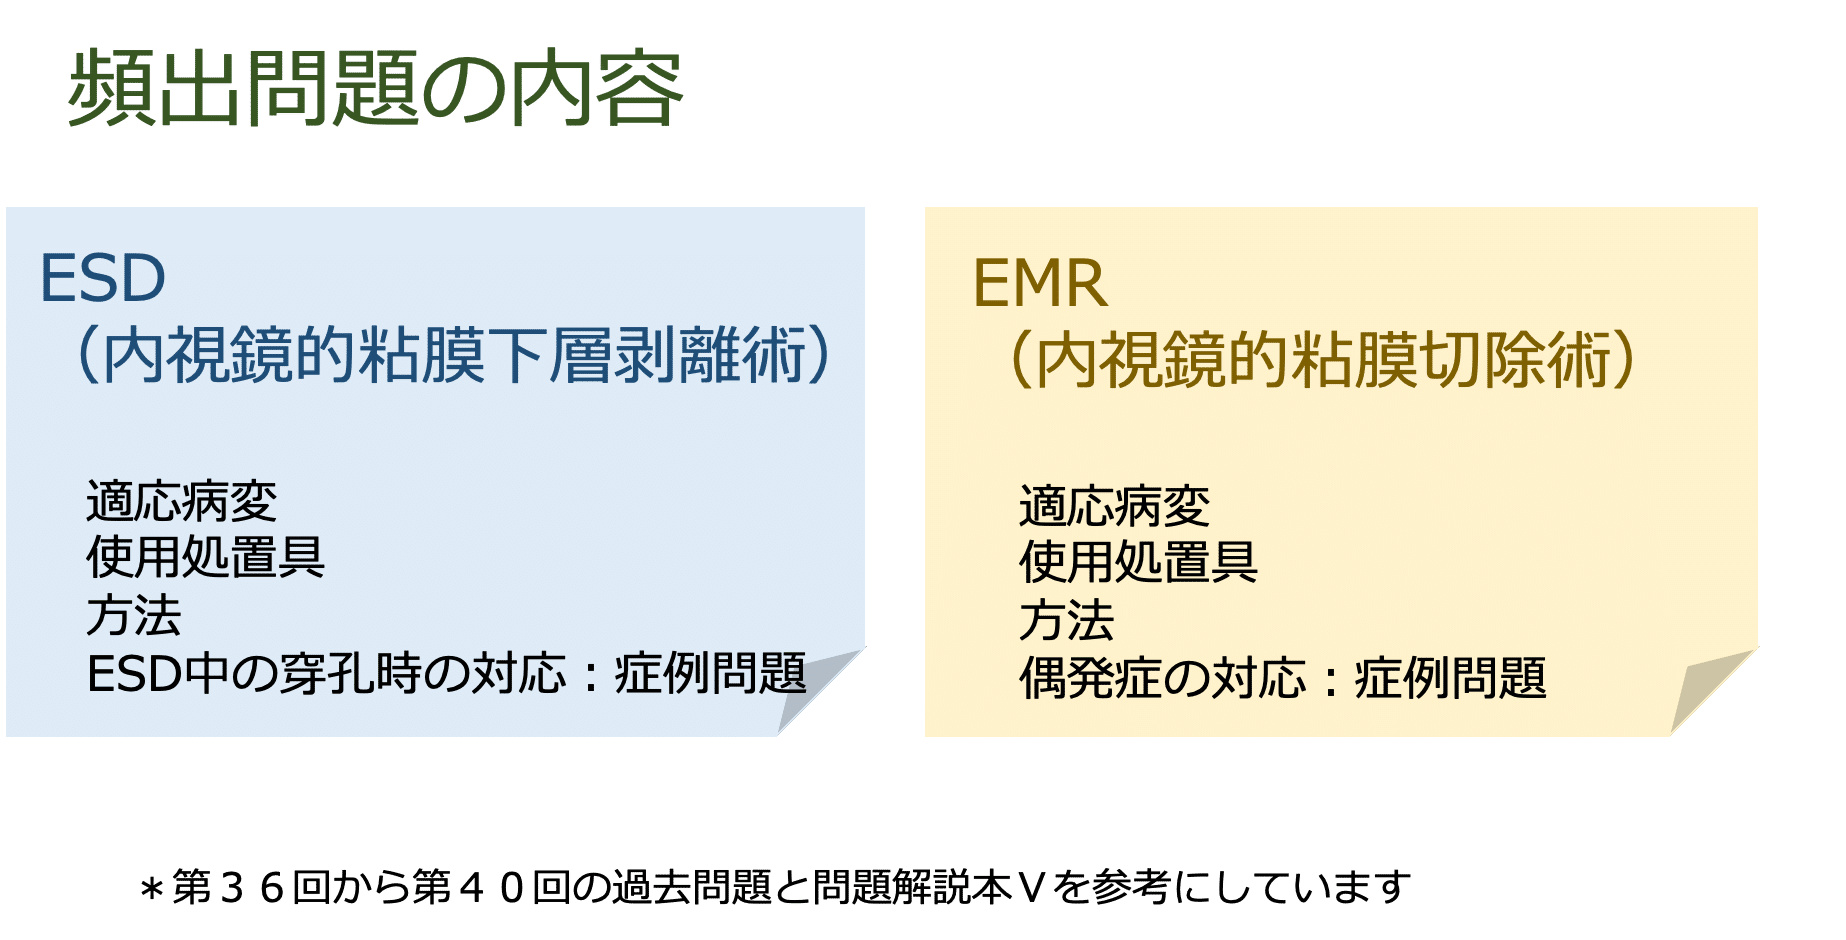 内視鏡クリニックNSのための 日本消化器内視鏡技師試験対策〜ESD/EMR